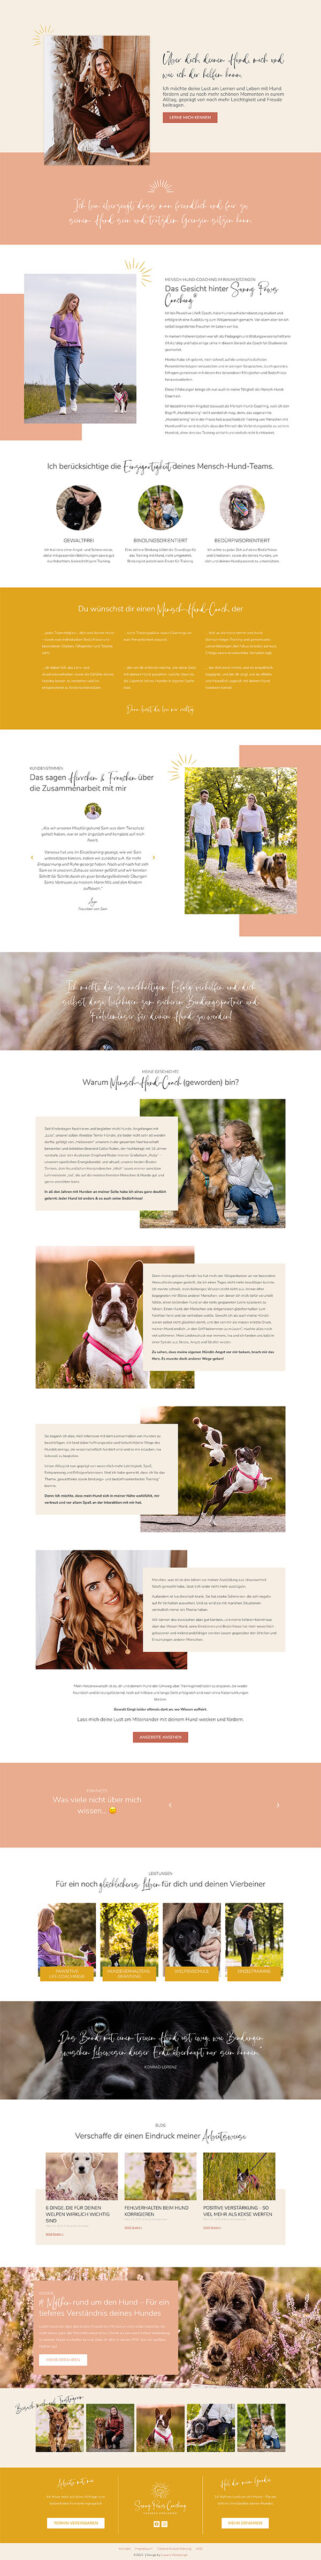 Screenshot von "Über mich" der Website für Mensch-Hund-Coach zeigt authentisches Branding und emotionales Design